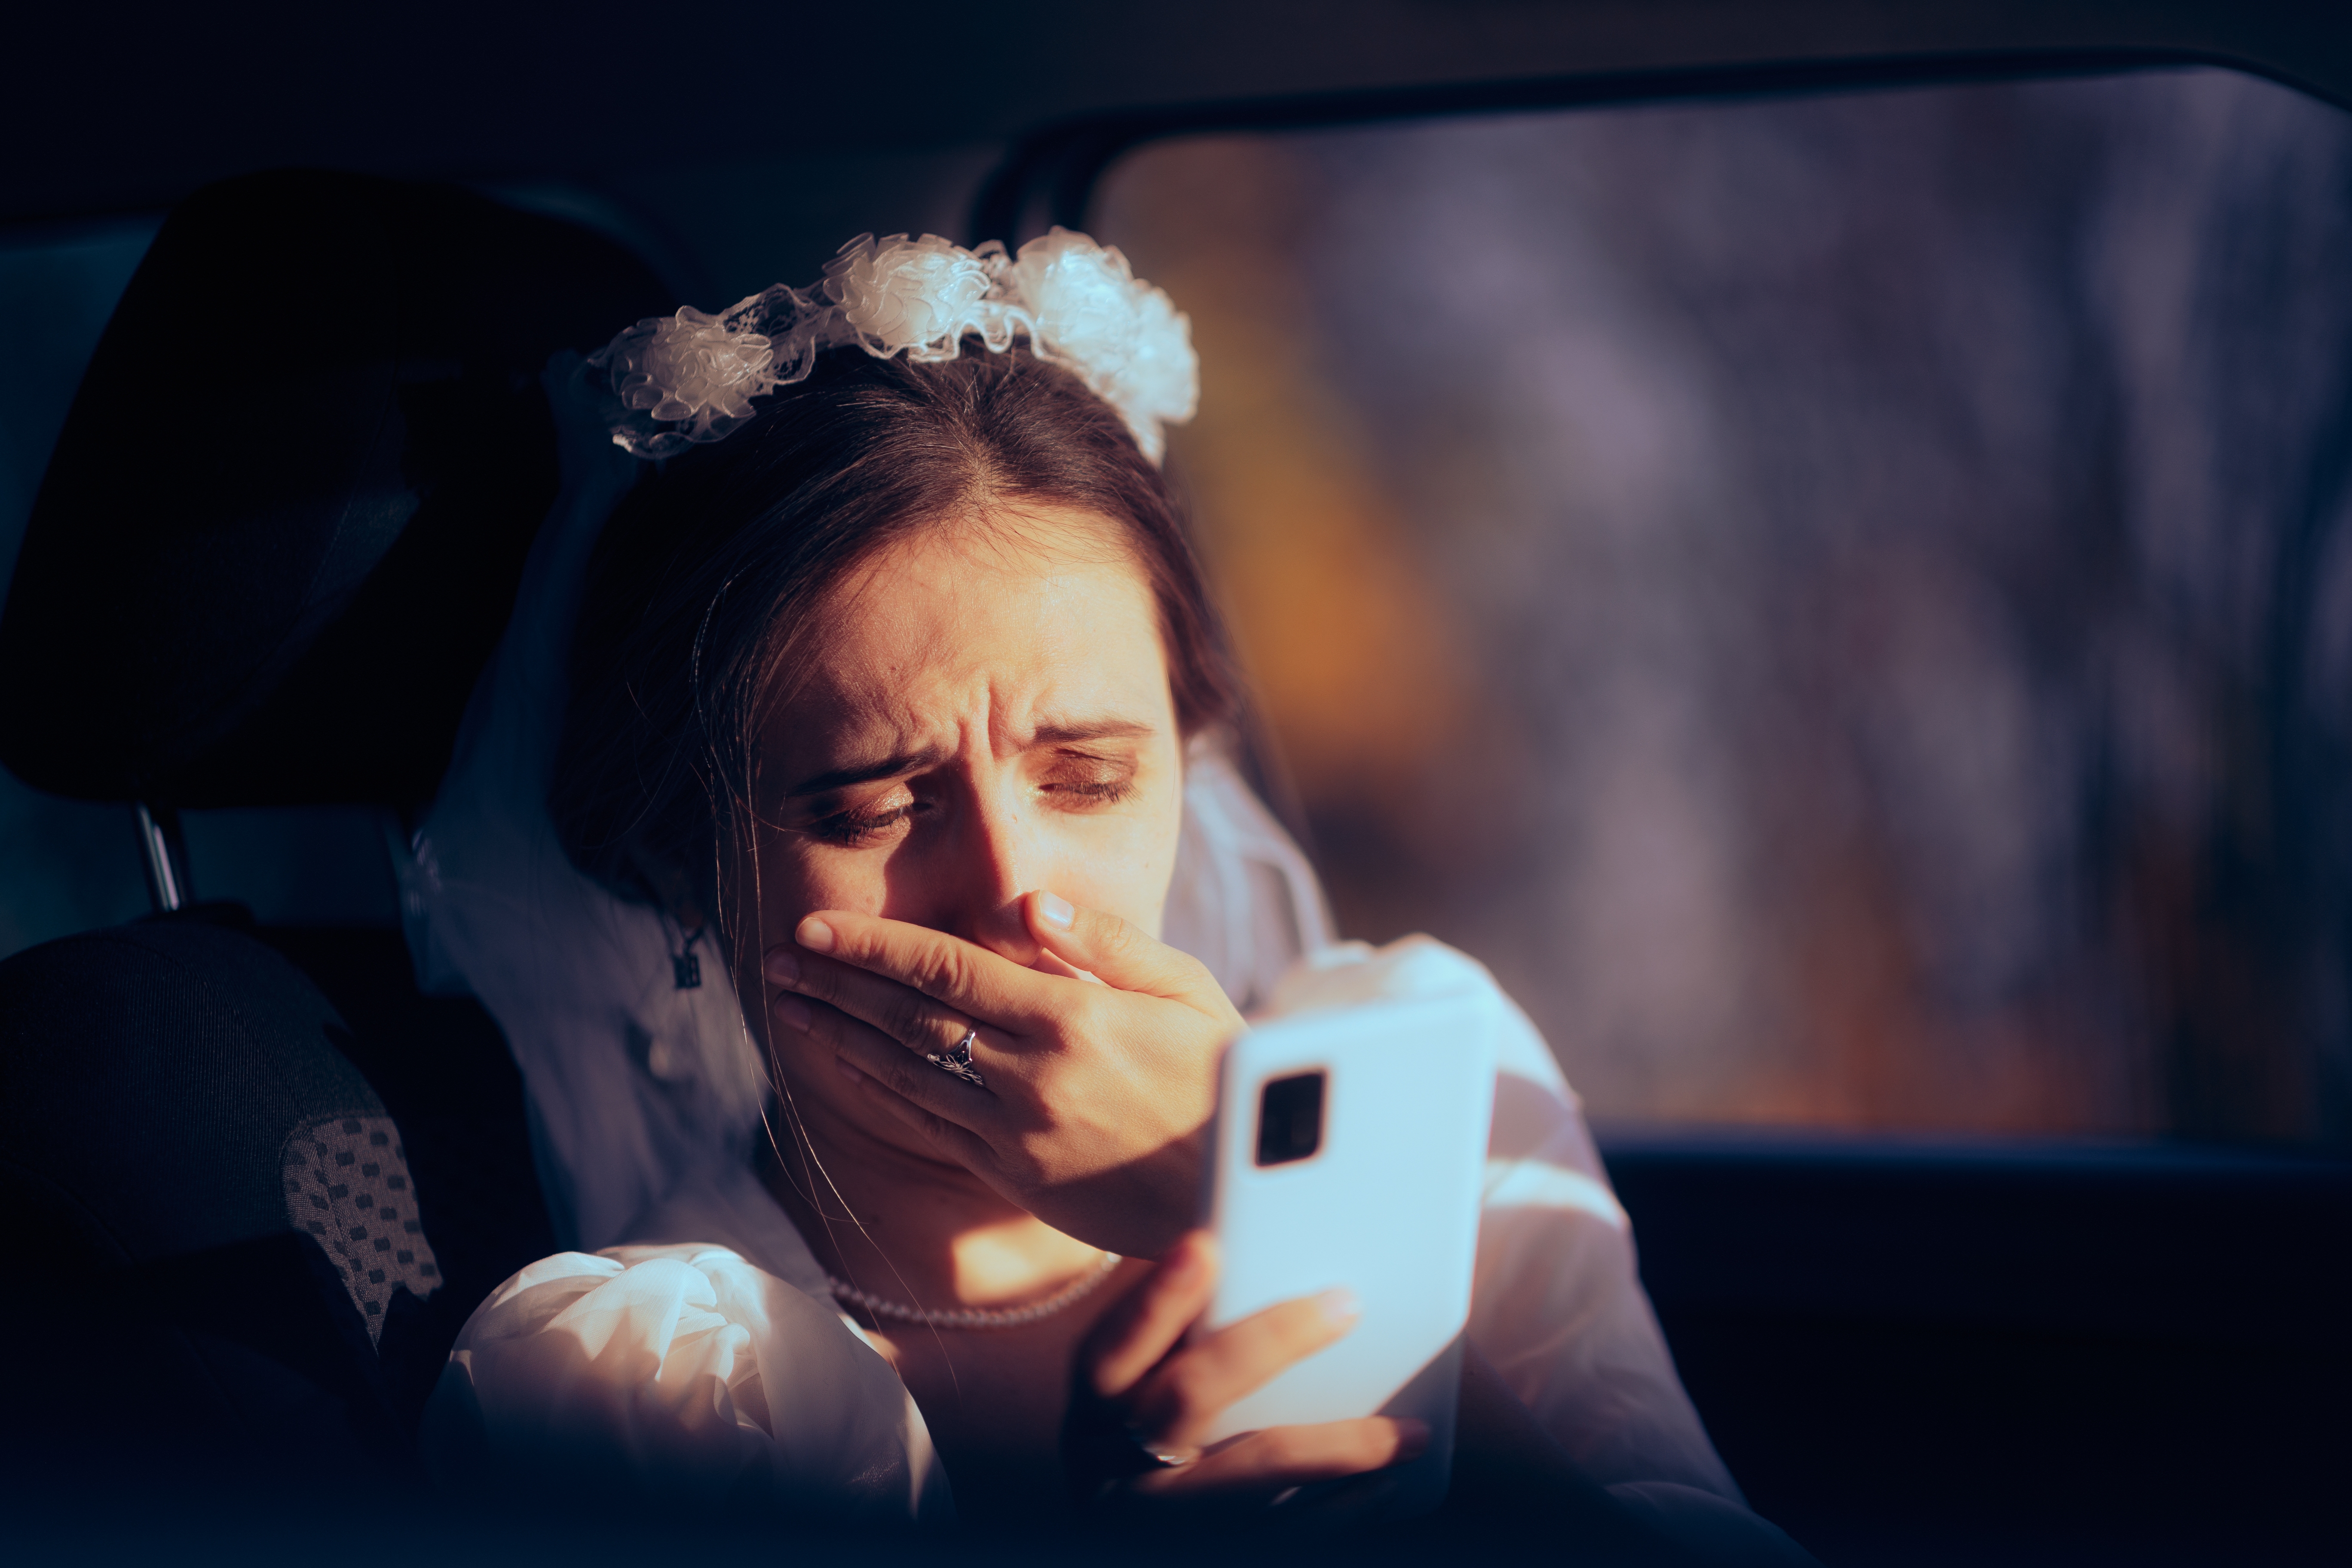 Das Bild einer Braut, die etwas Beunruhigendes auf ihrem Telefon liest | Quelle: Shutterstock